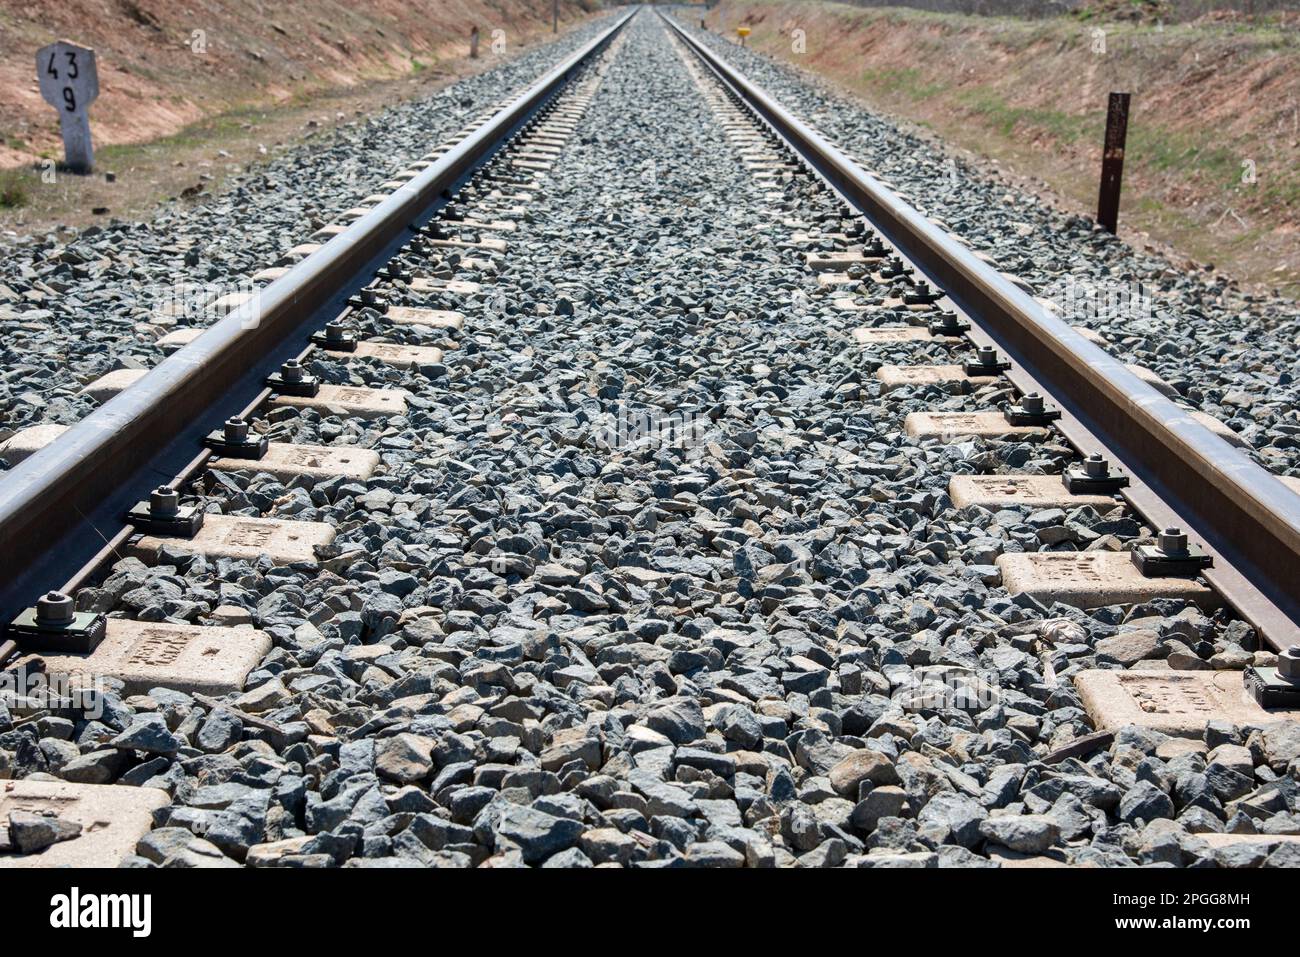 Detale de una vía de ferrocarril desde un paso a nivel Banque D'Images